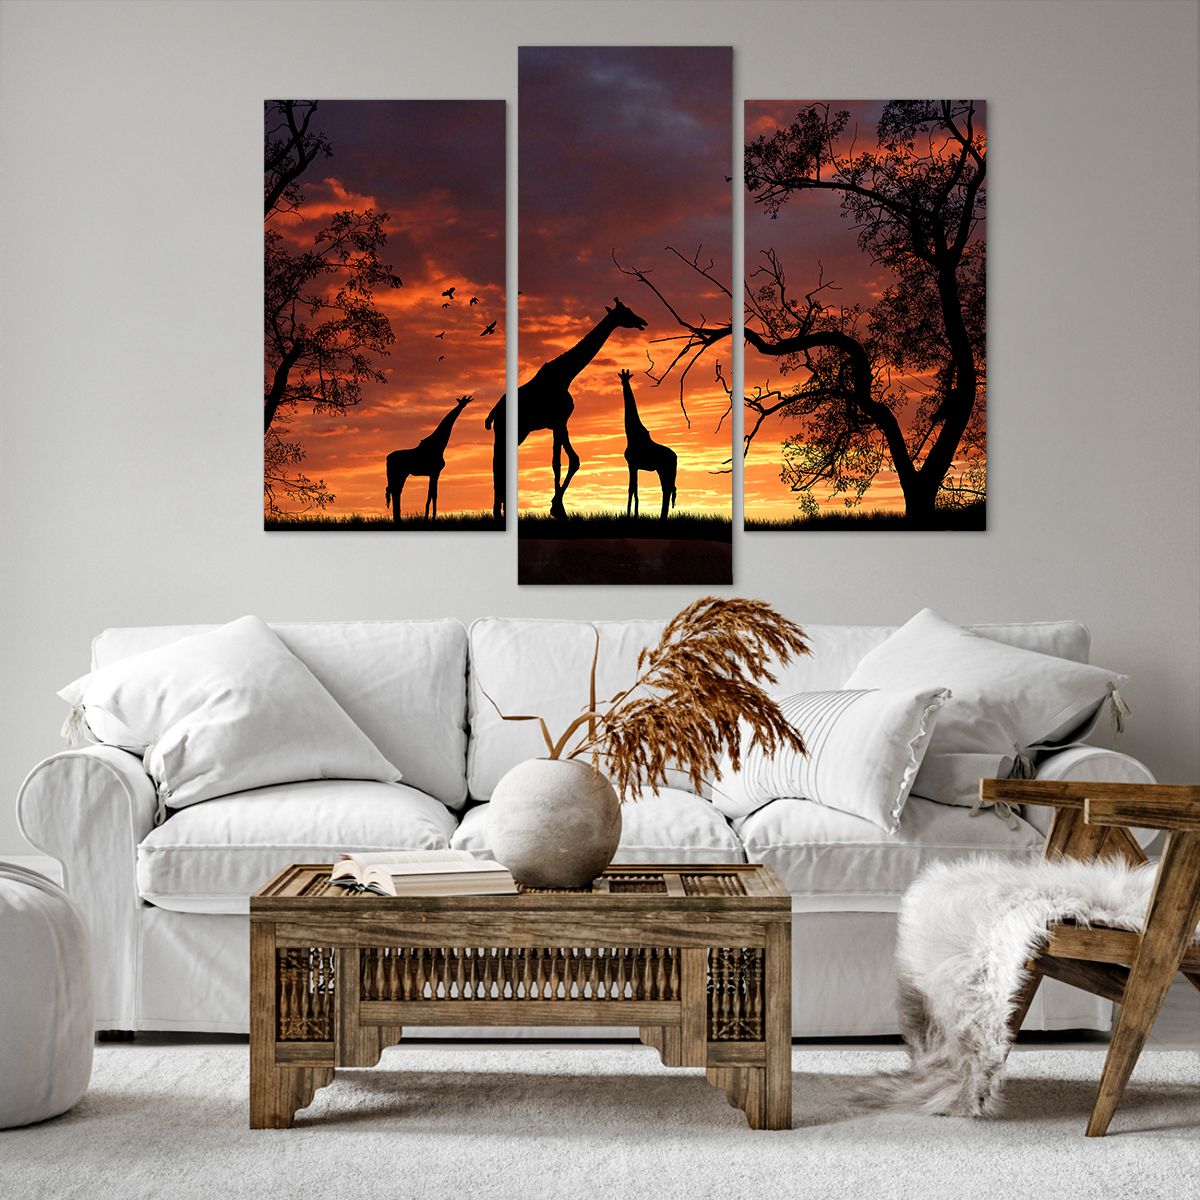 Impression sur toile Animaux, Impression sur toile Girafe, Impression sur toile Afrique, Impression sur toile La Nature, Impression sur toile Le Coucher Du Soleil